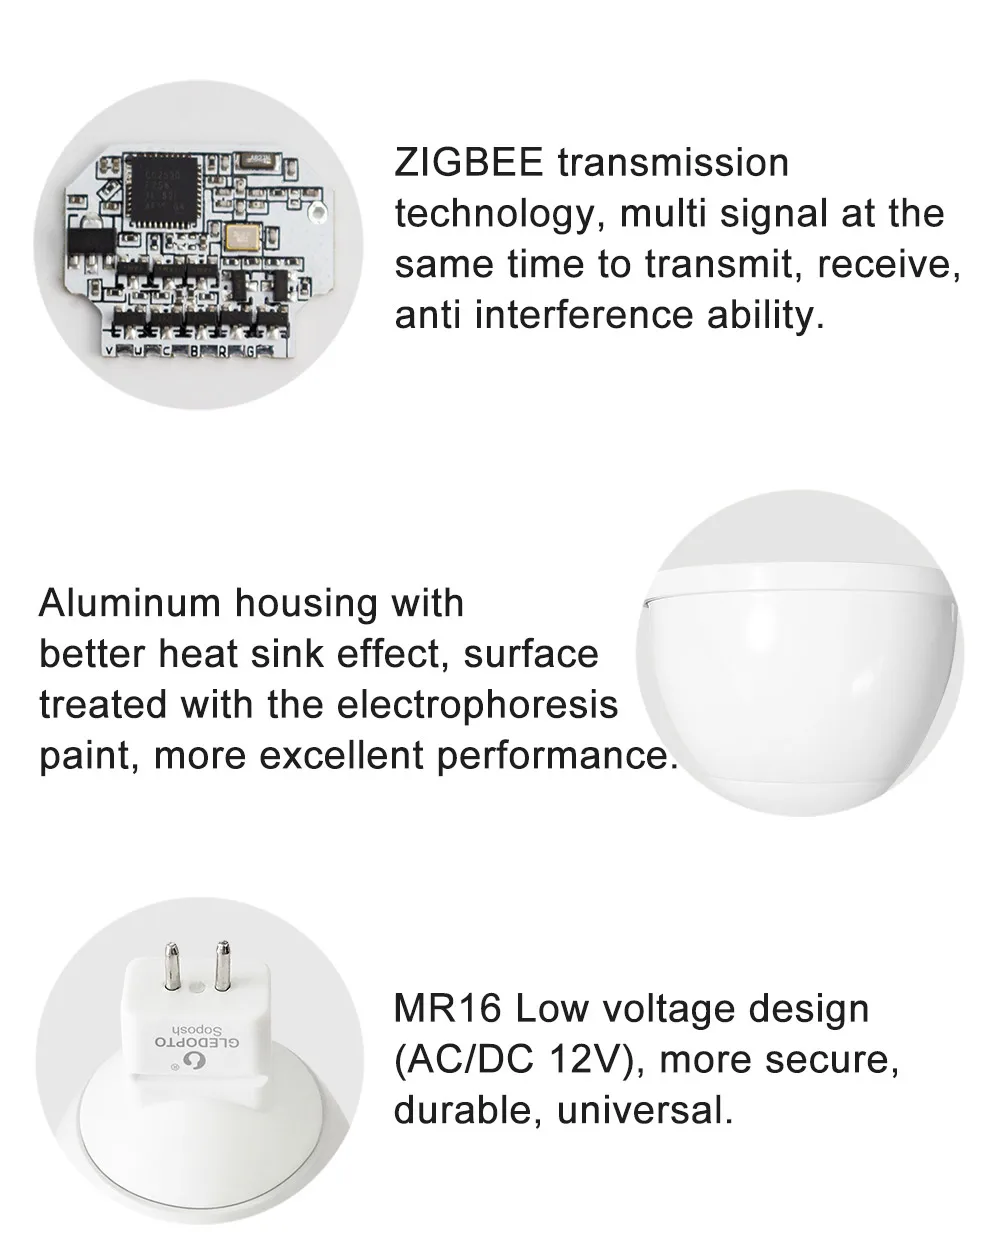 ZIGBEE MR16 Светодиодный прожектор 4 Вт RGBCCT светодиодный лампочка DC 12 В умная точечная лампа работает с ZIGBEE 3,0 шлюз Amazon Echo Plus